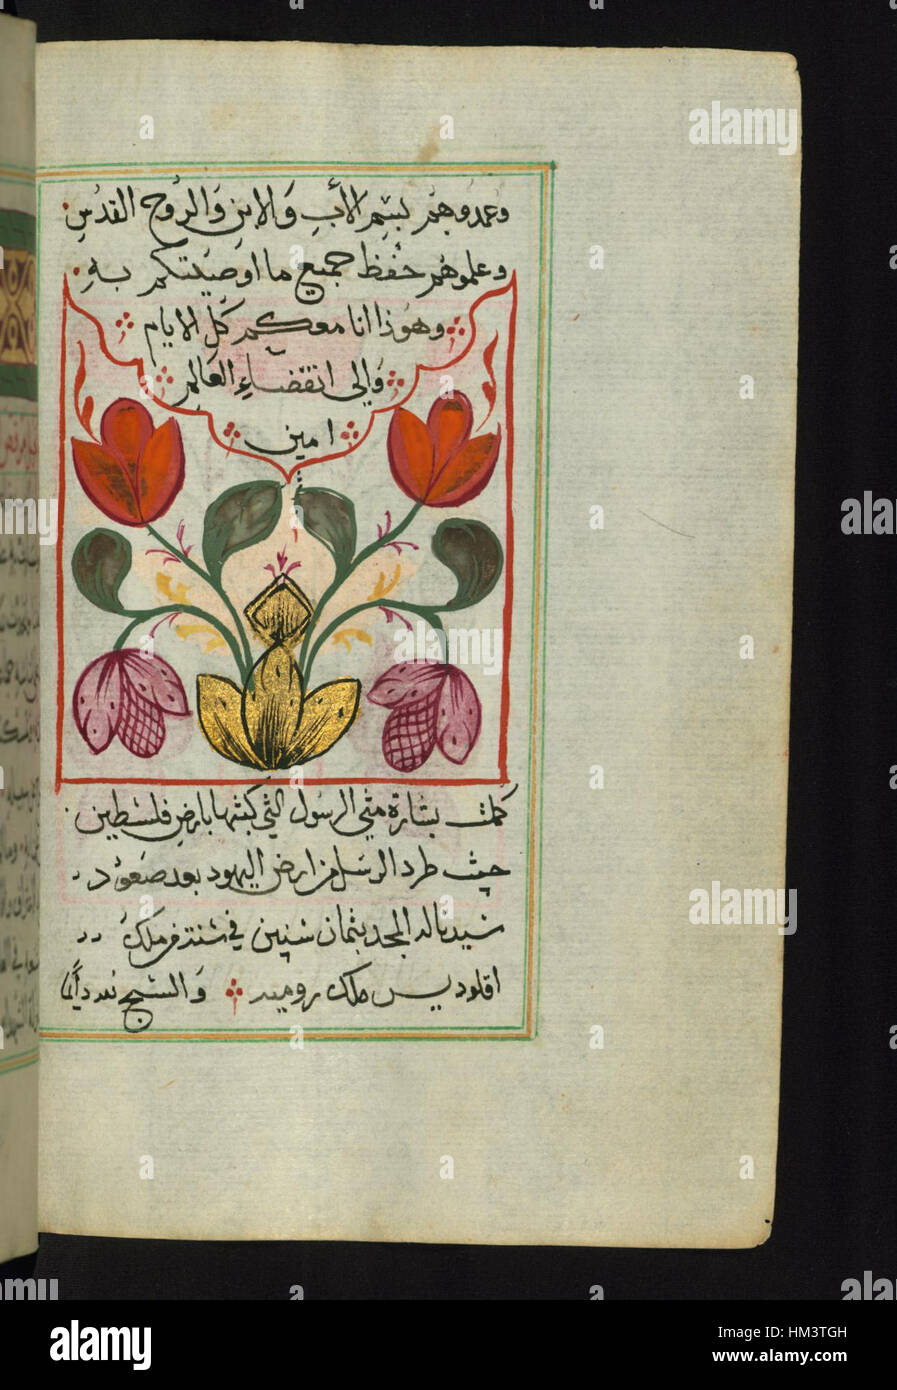 Ilyas Basim Khuri Bazzi Rahib - Cordier peint floral à l'Évangile de Matthieu - Walters W59283B - Page complète Banque D'Images